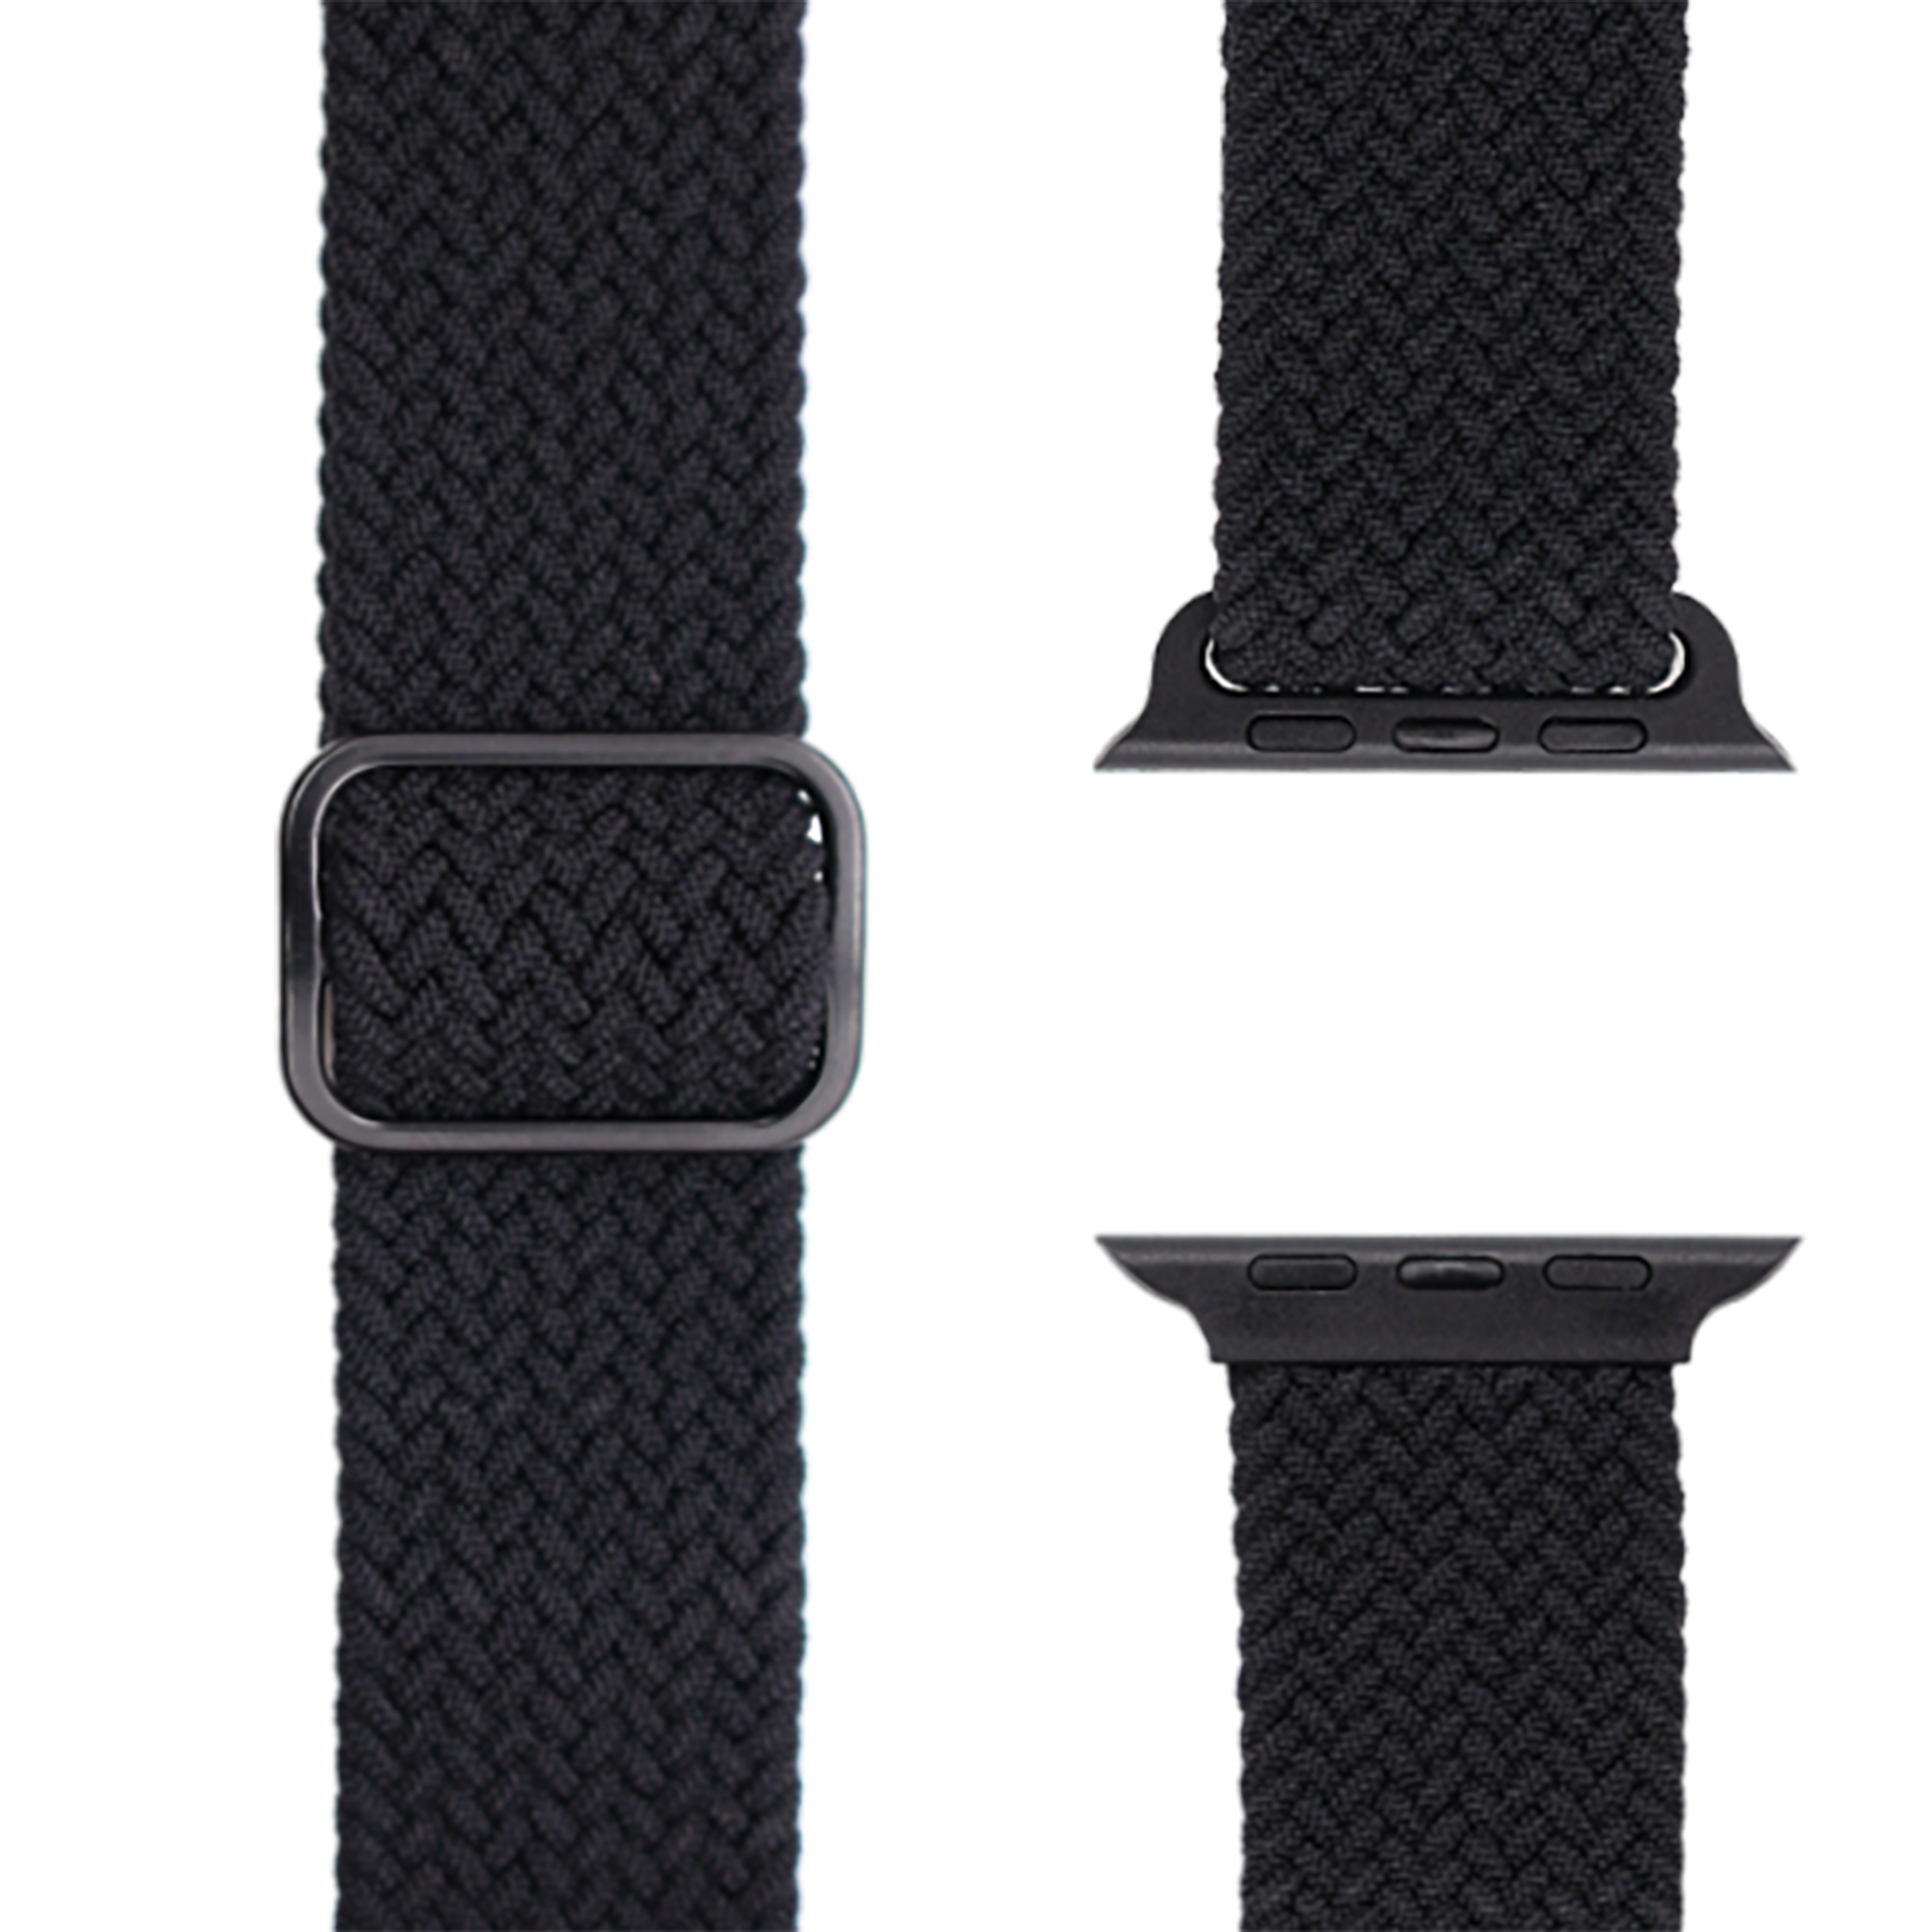 APFELBAND Geflochtenes Watch 9 | 40mm | Ersatzarmband, Series 38mm / Apple, Flex - 41mm, Schwarz SE, Series 1 und Loop